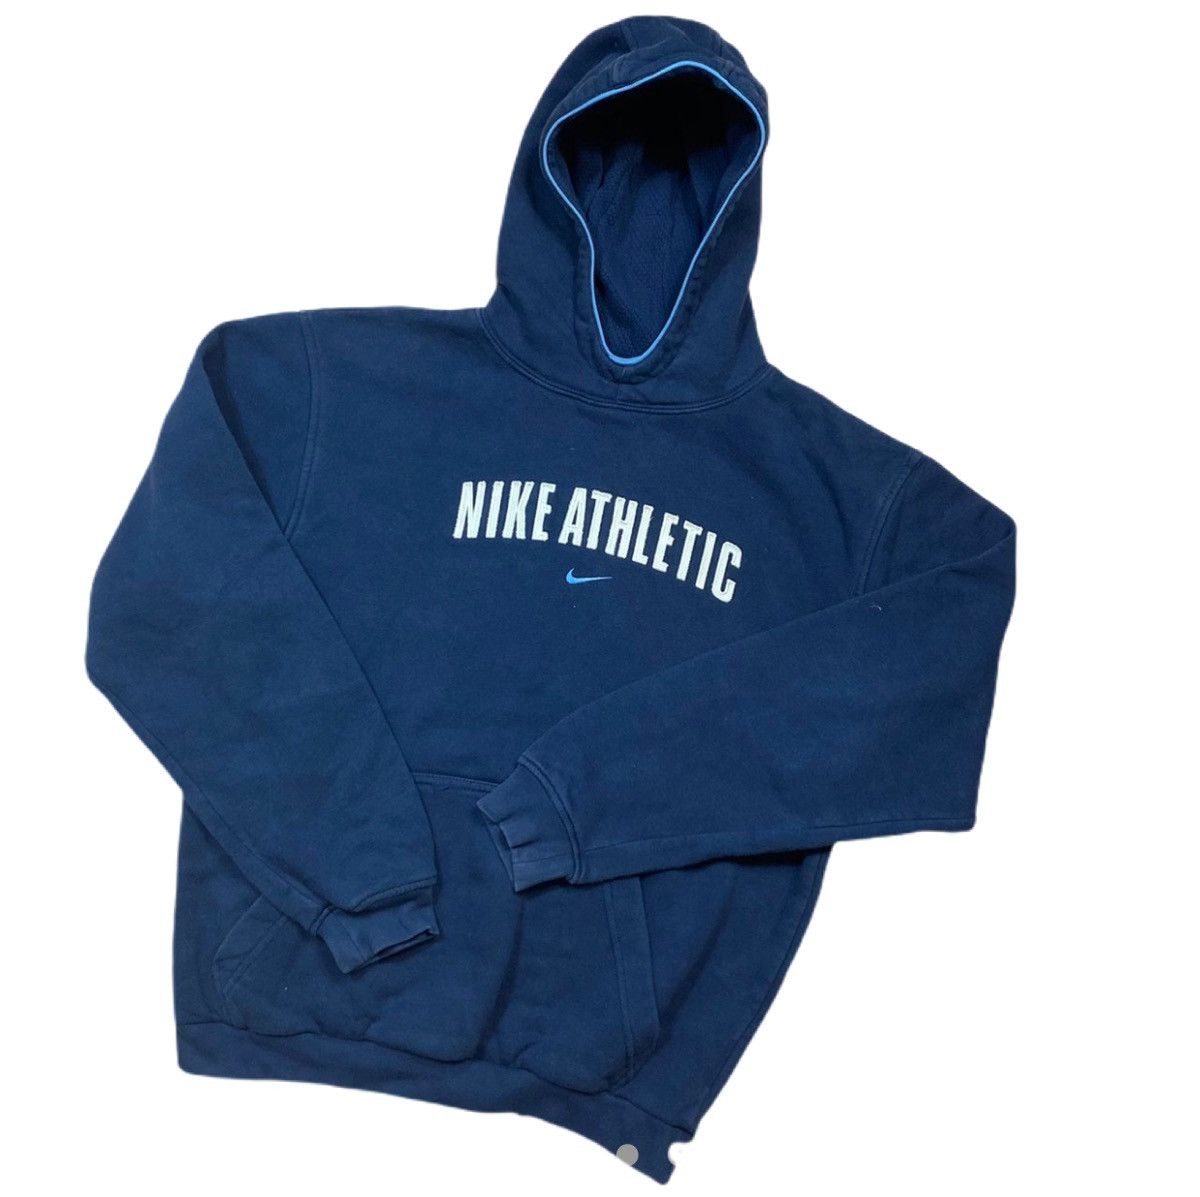 Nike Nike Athletic Vintage 90s Hoodie | Grailed